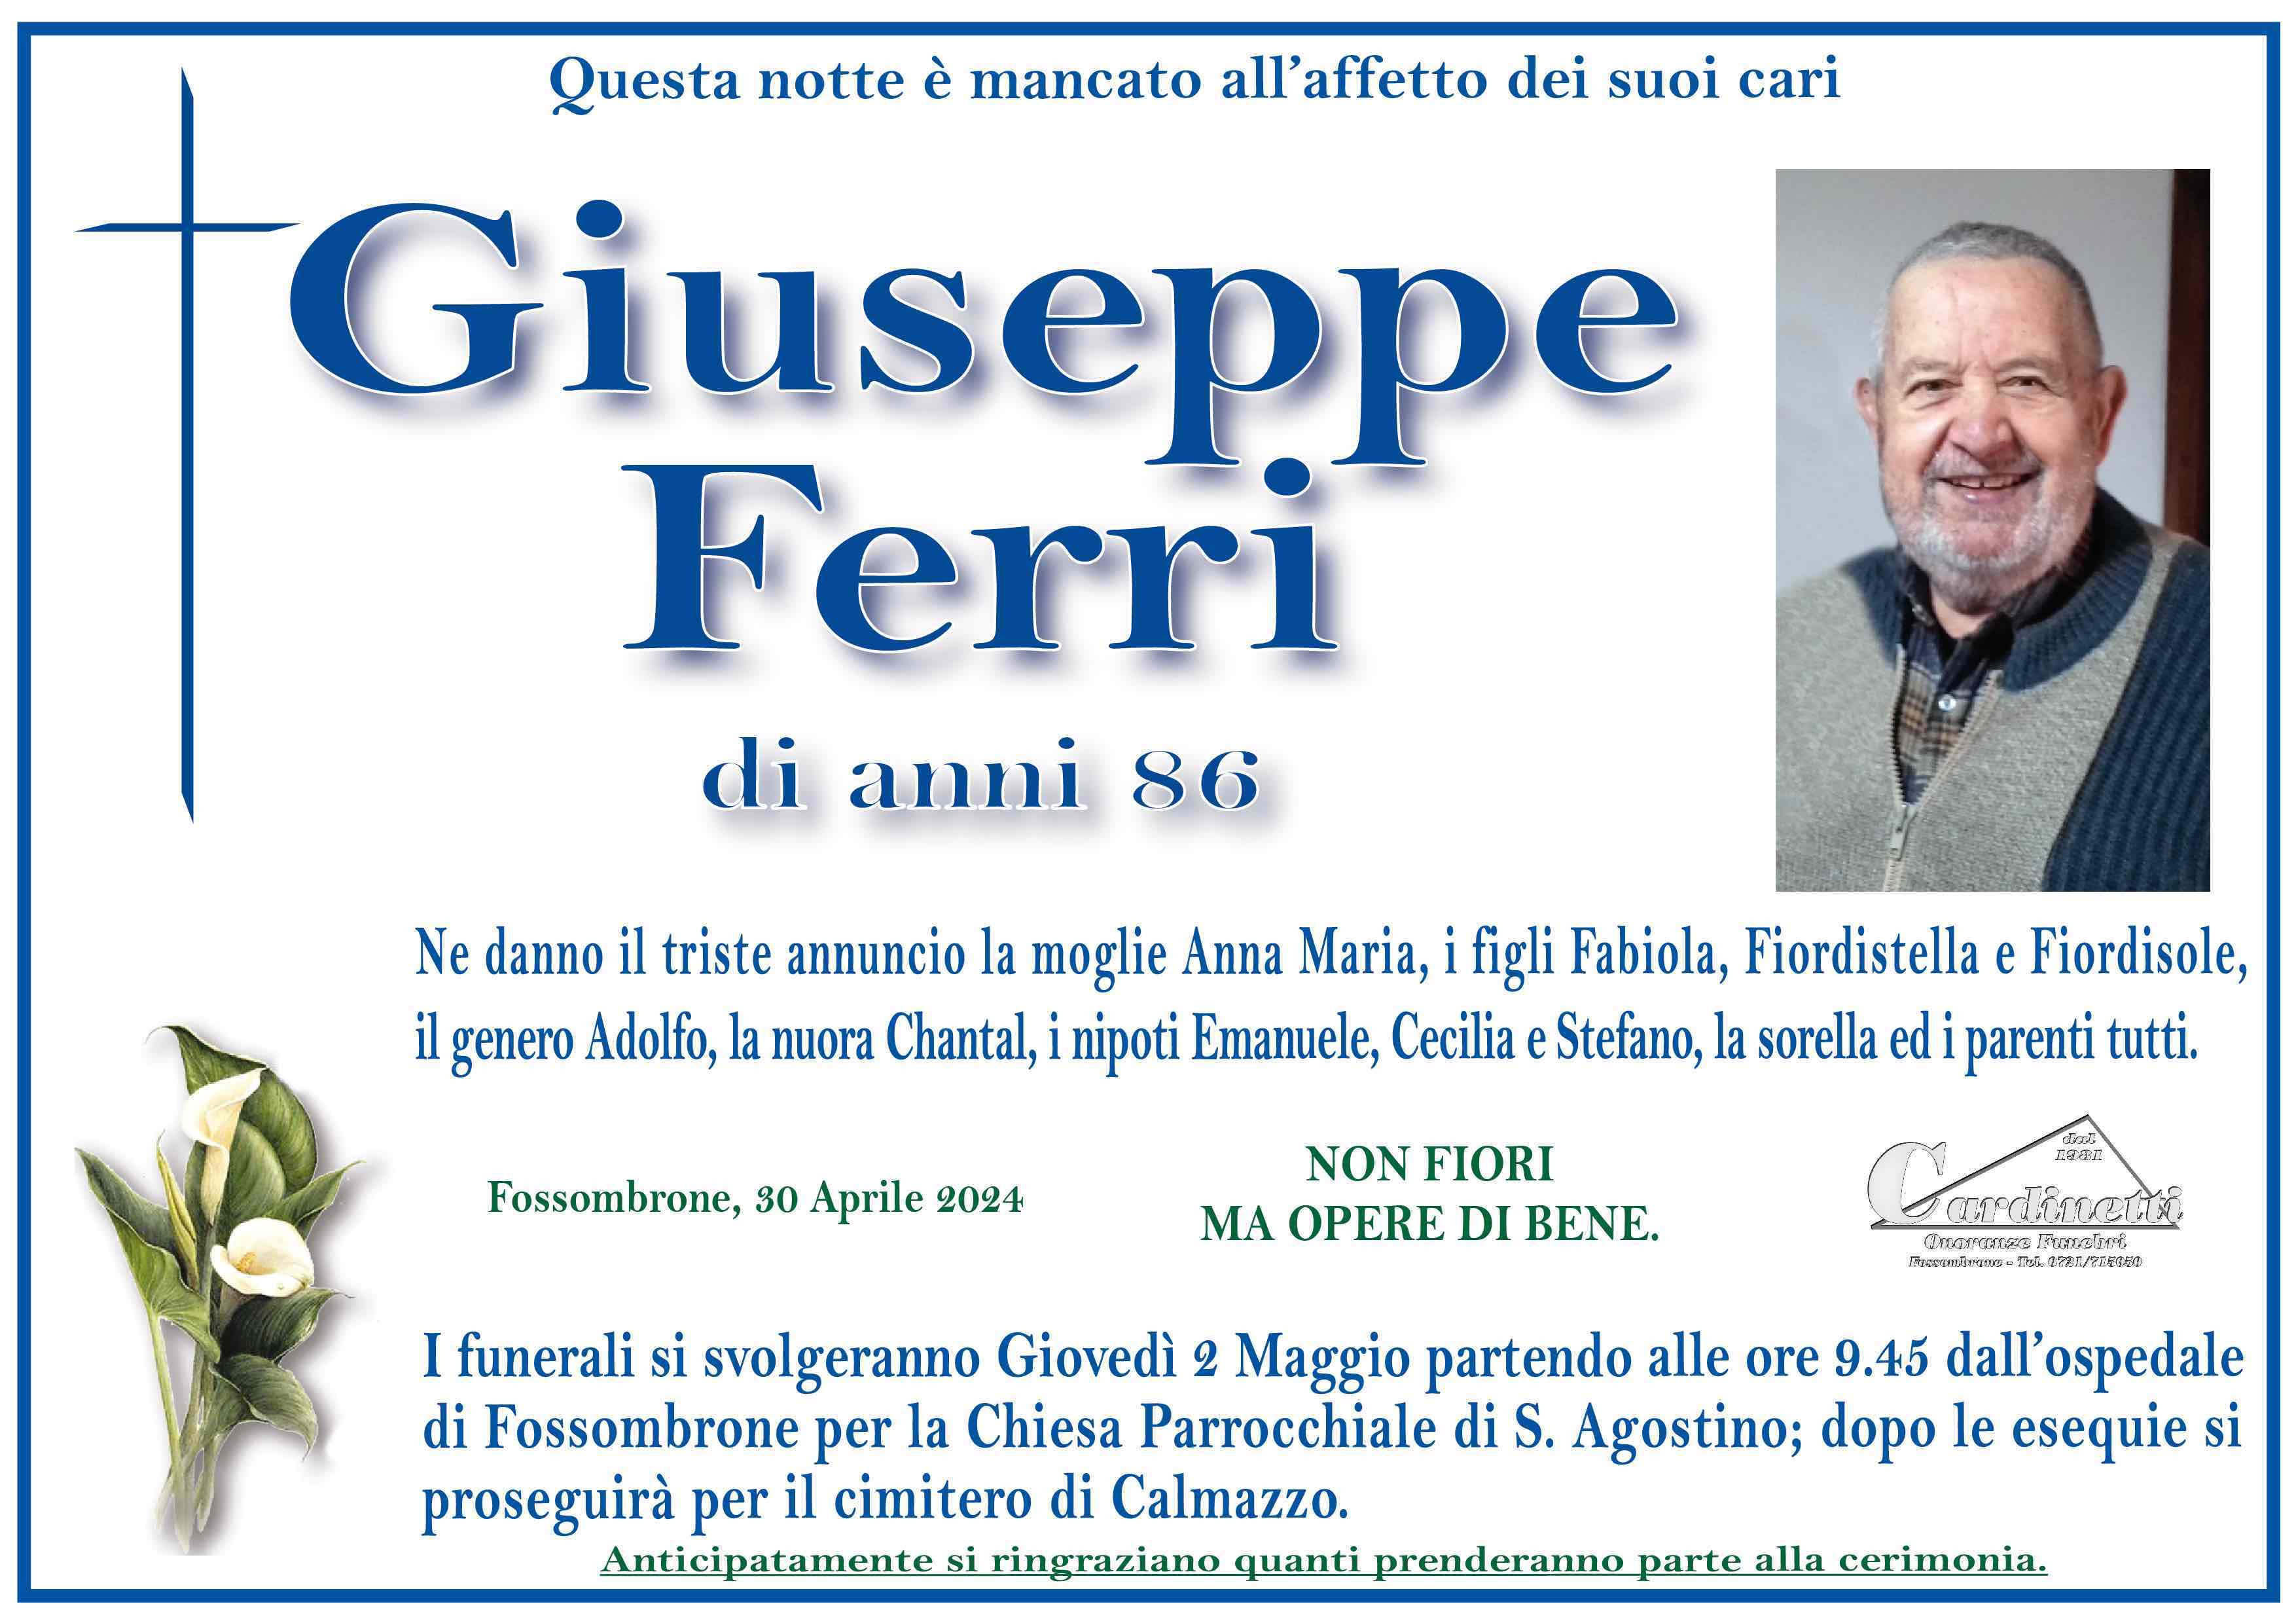 Giuseppe Ferri